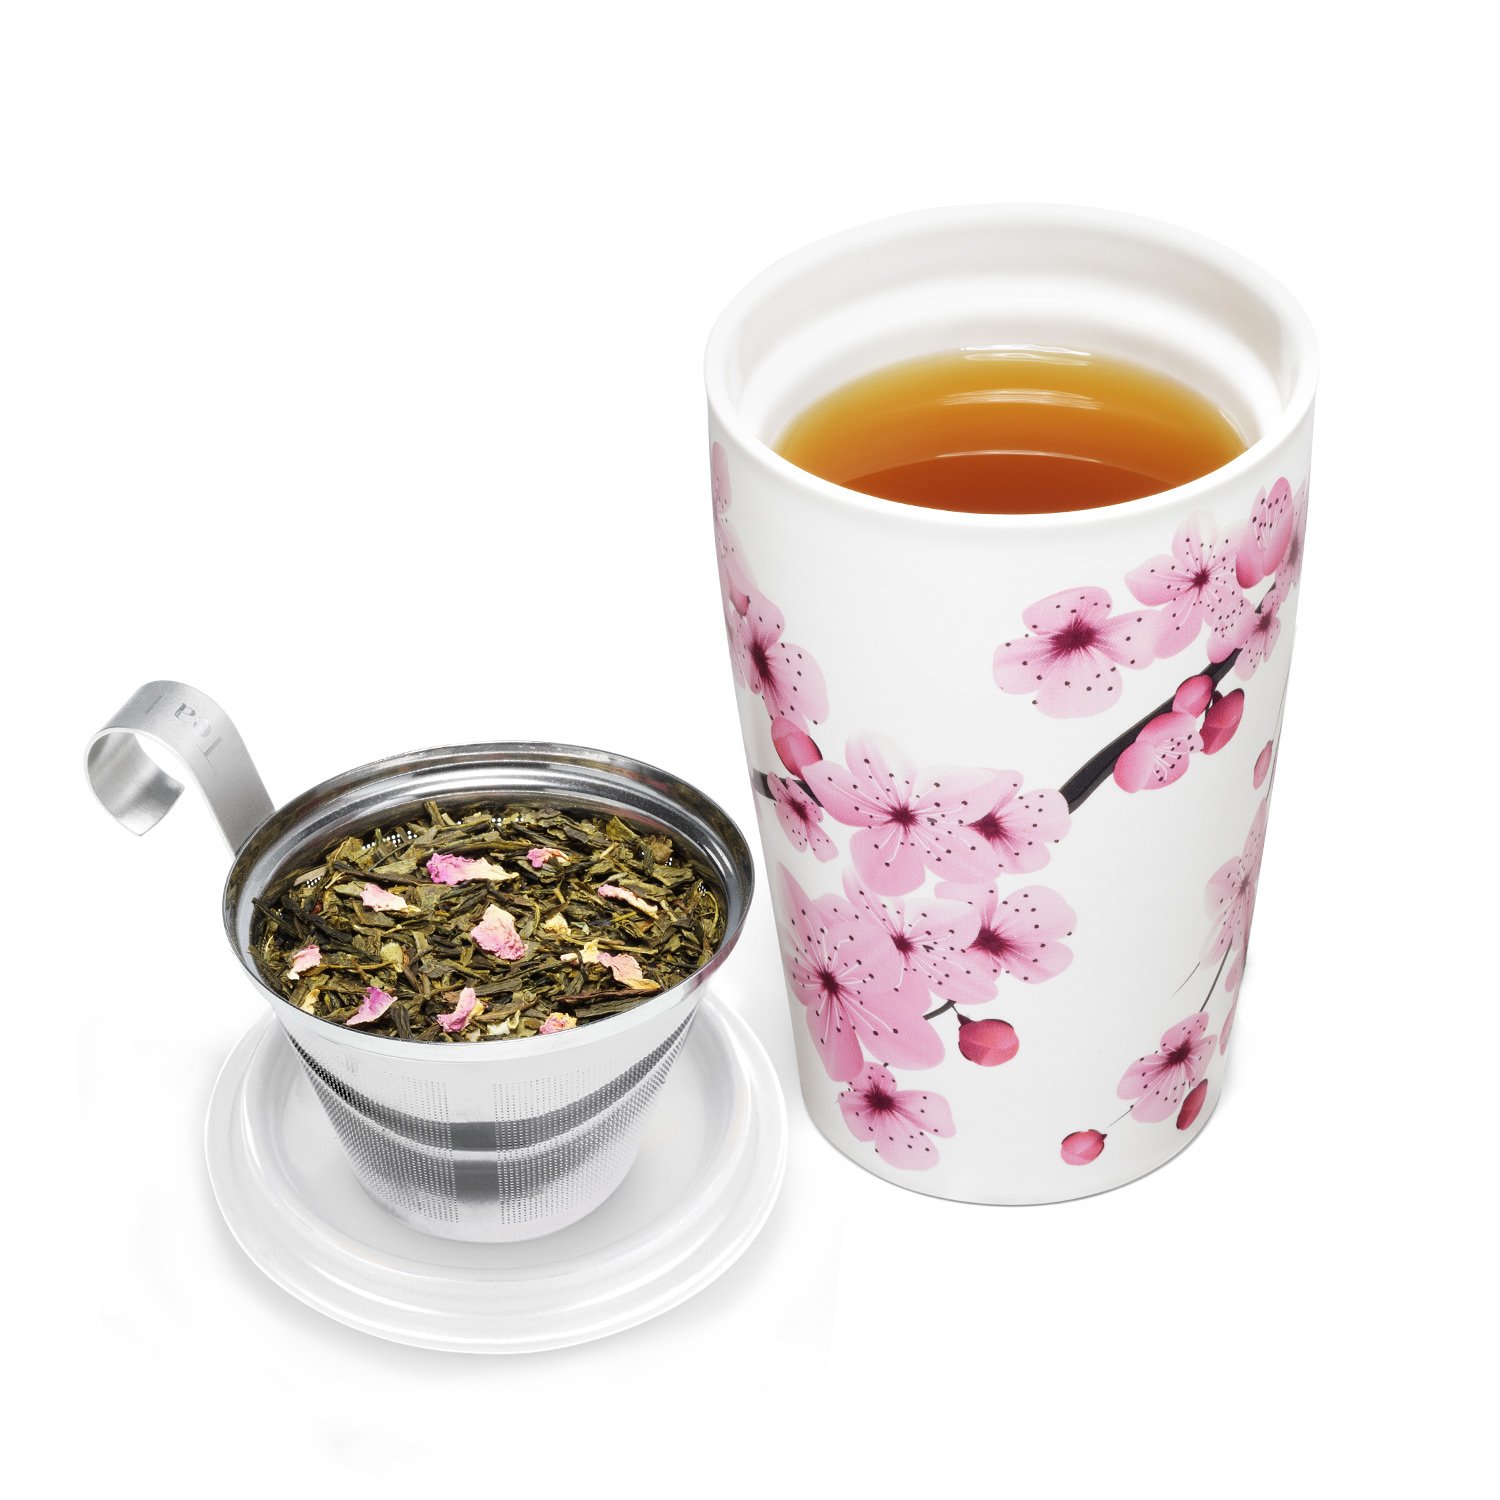 Tea Forte Kati Cup Hanami, Ceramic Tea Infuser Mug with Lid for Steeping Loose Leaf Tea, 12oz Ceramic Tea Infuser Cup for Tea Lovers, Tea Gifts